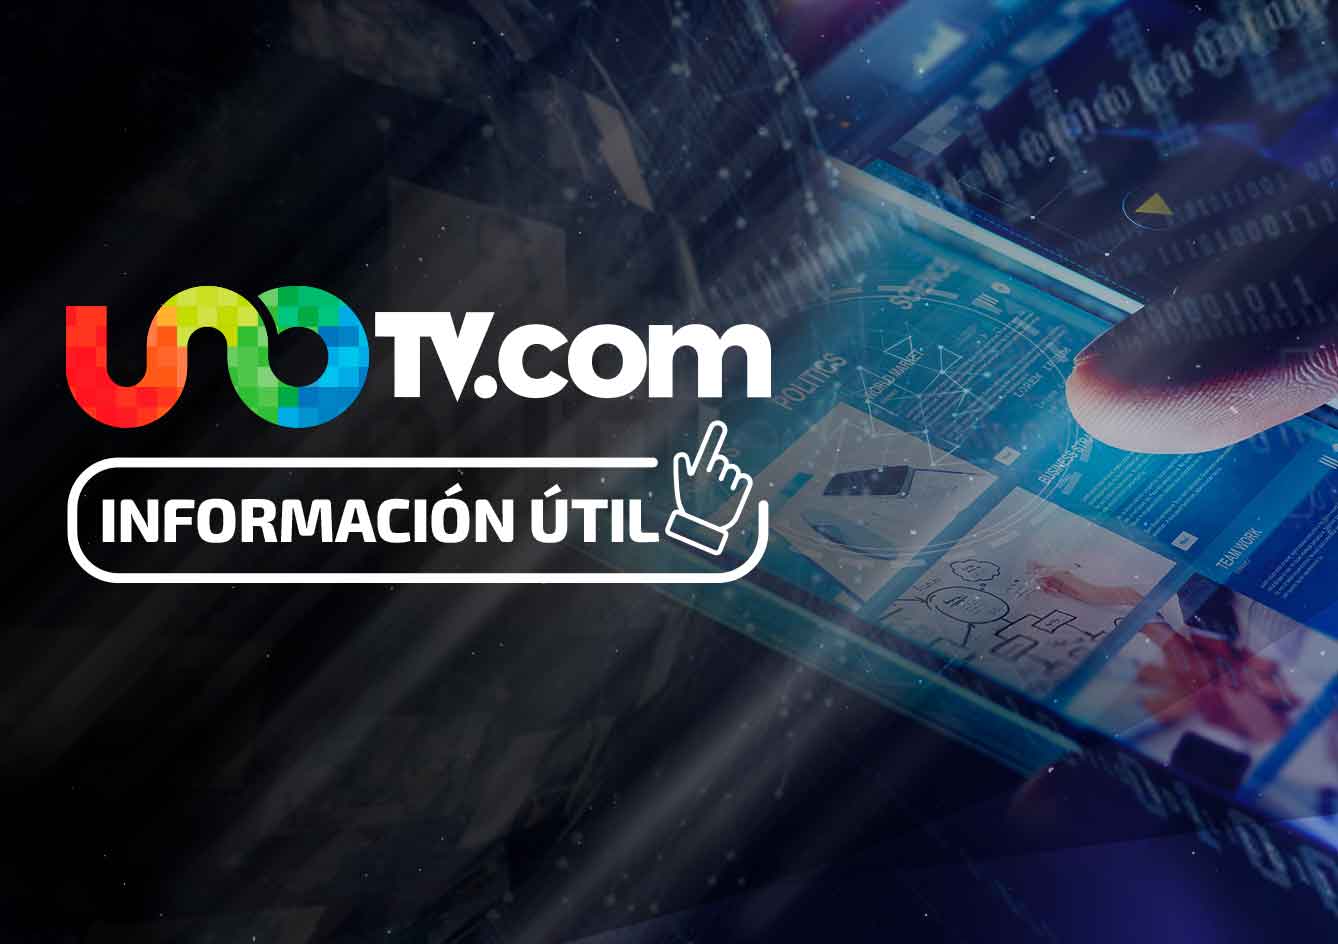 Unotv.com, sitio de noticias más leído en México. Foto: Uno TV